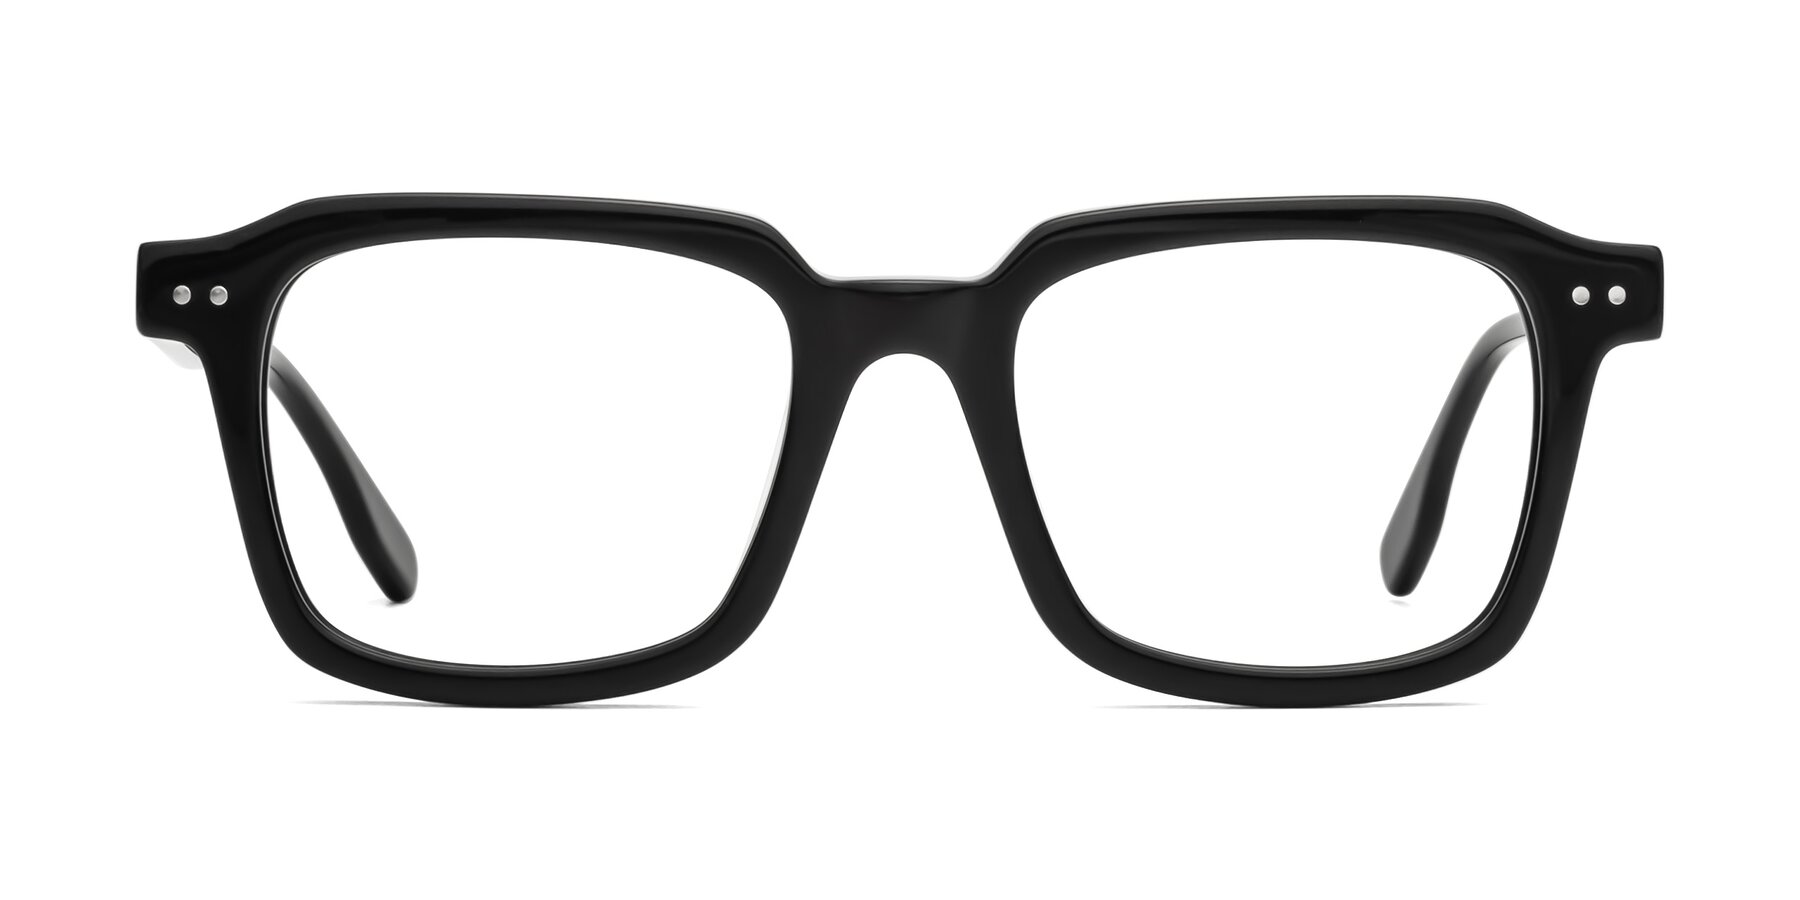 St. Mark - Black Sunglasses Frame